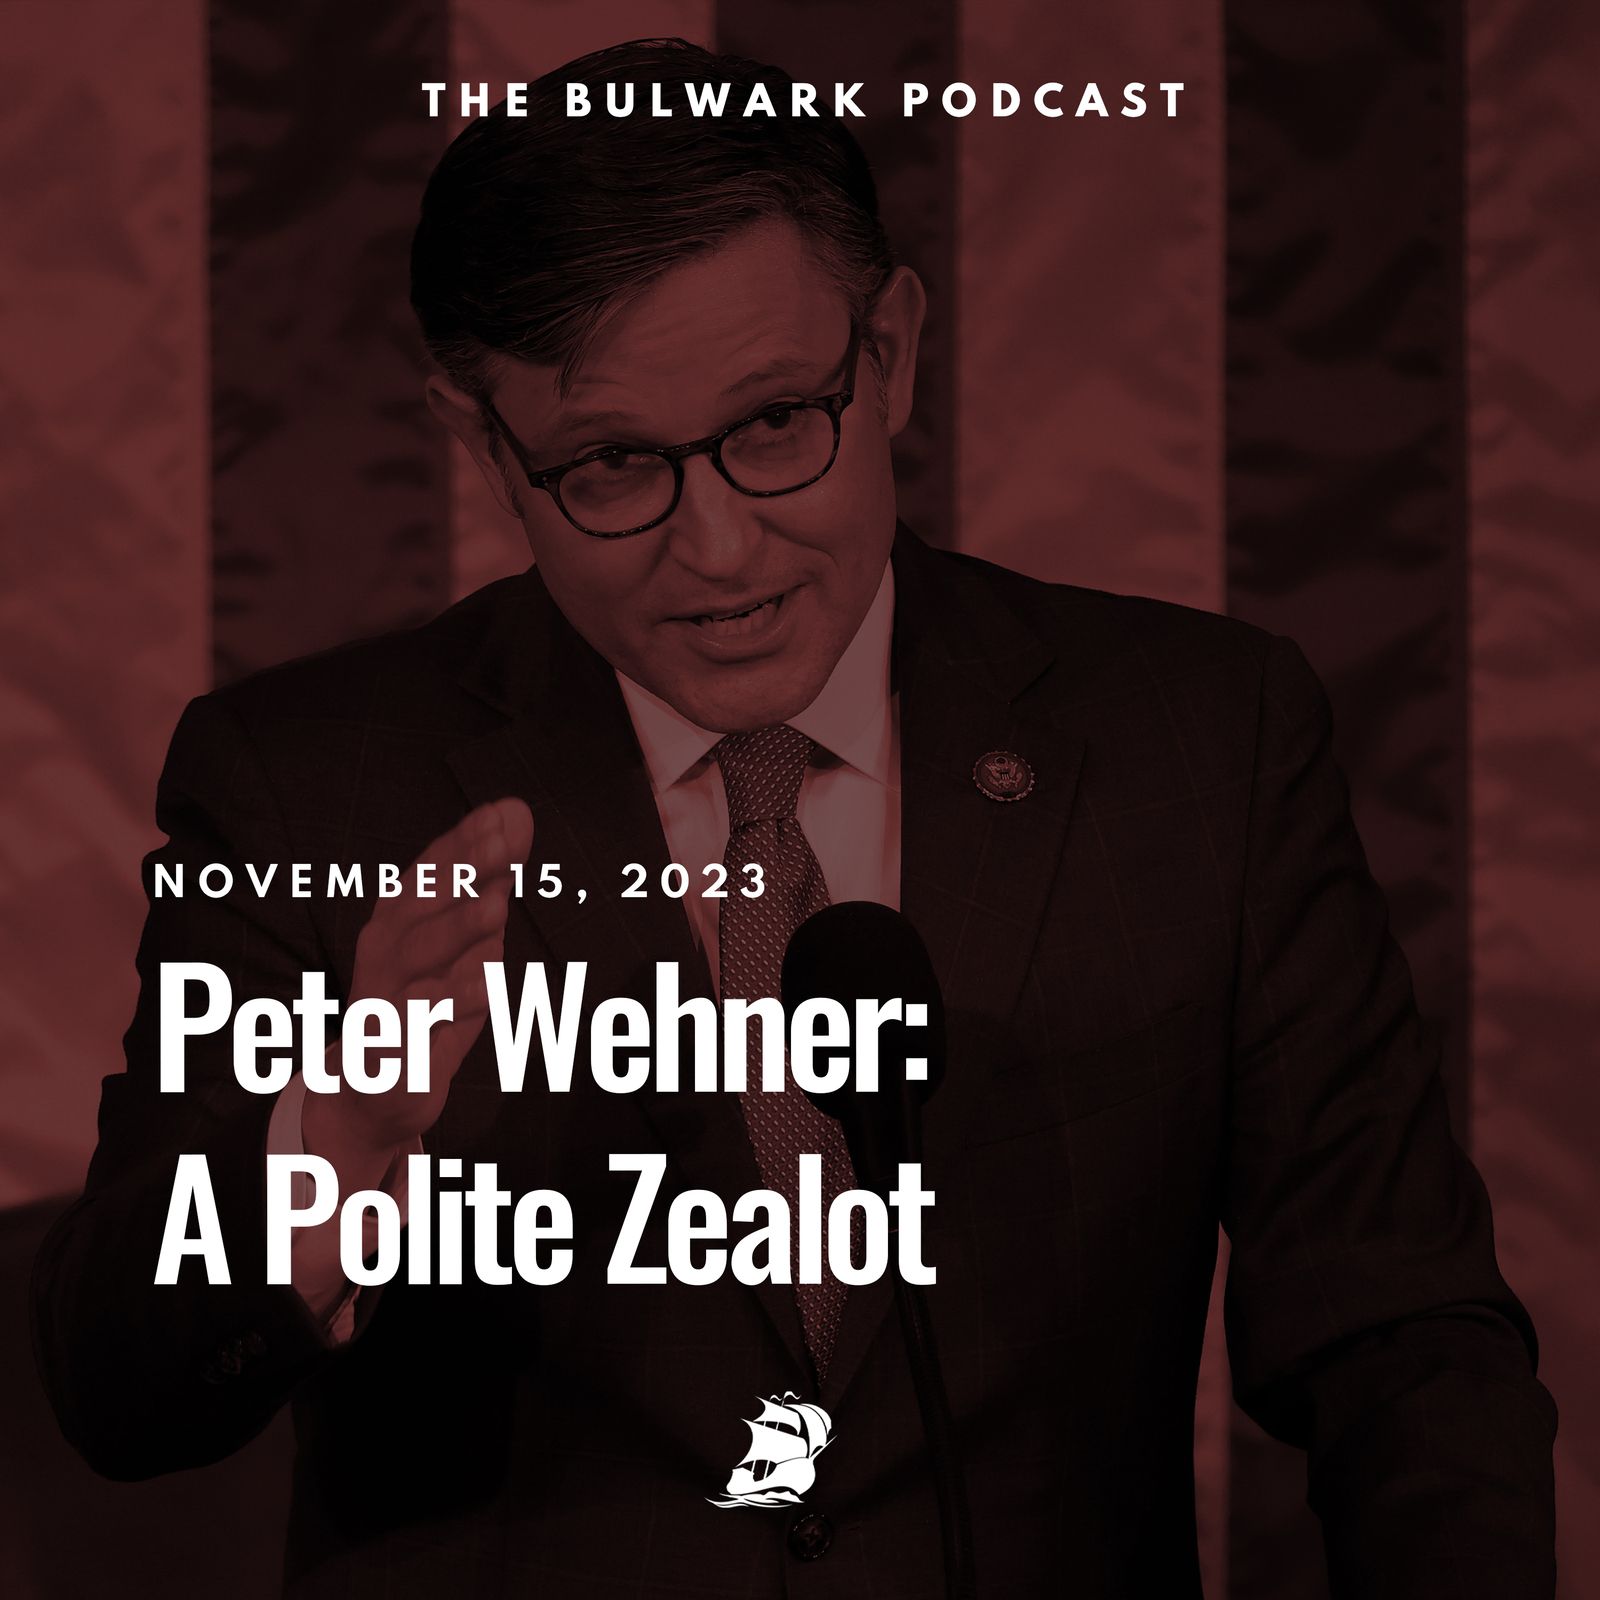 Peter Wehner: A Polite Zealot